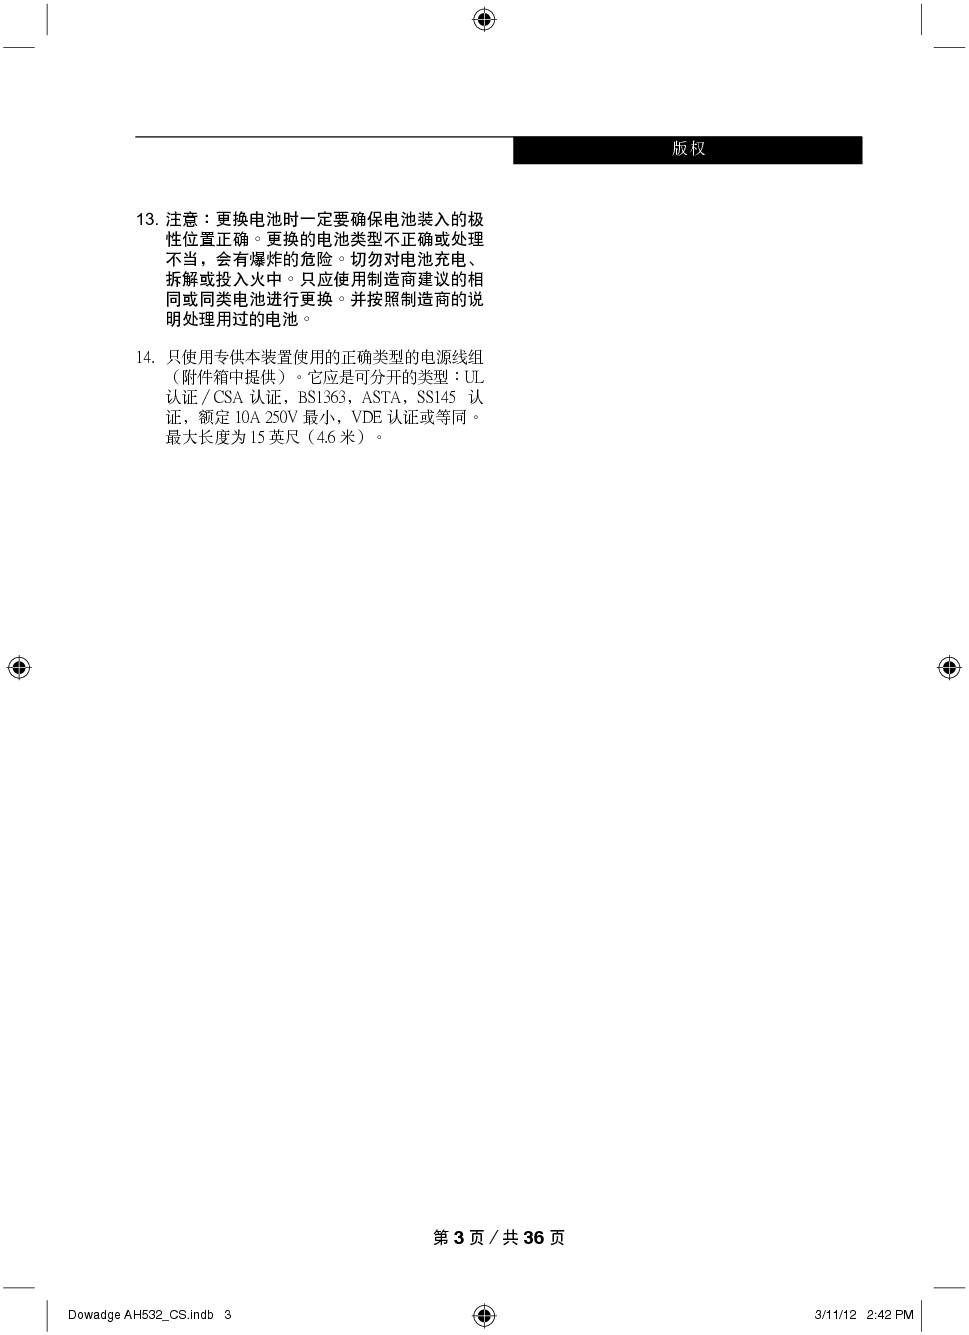 富士通 Fujitsu LifeBook A532 Windows 7 使用说明书 第2页